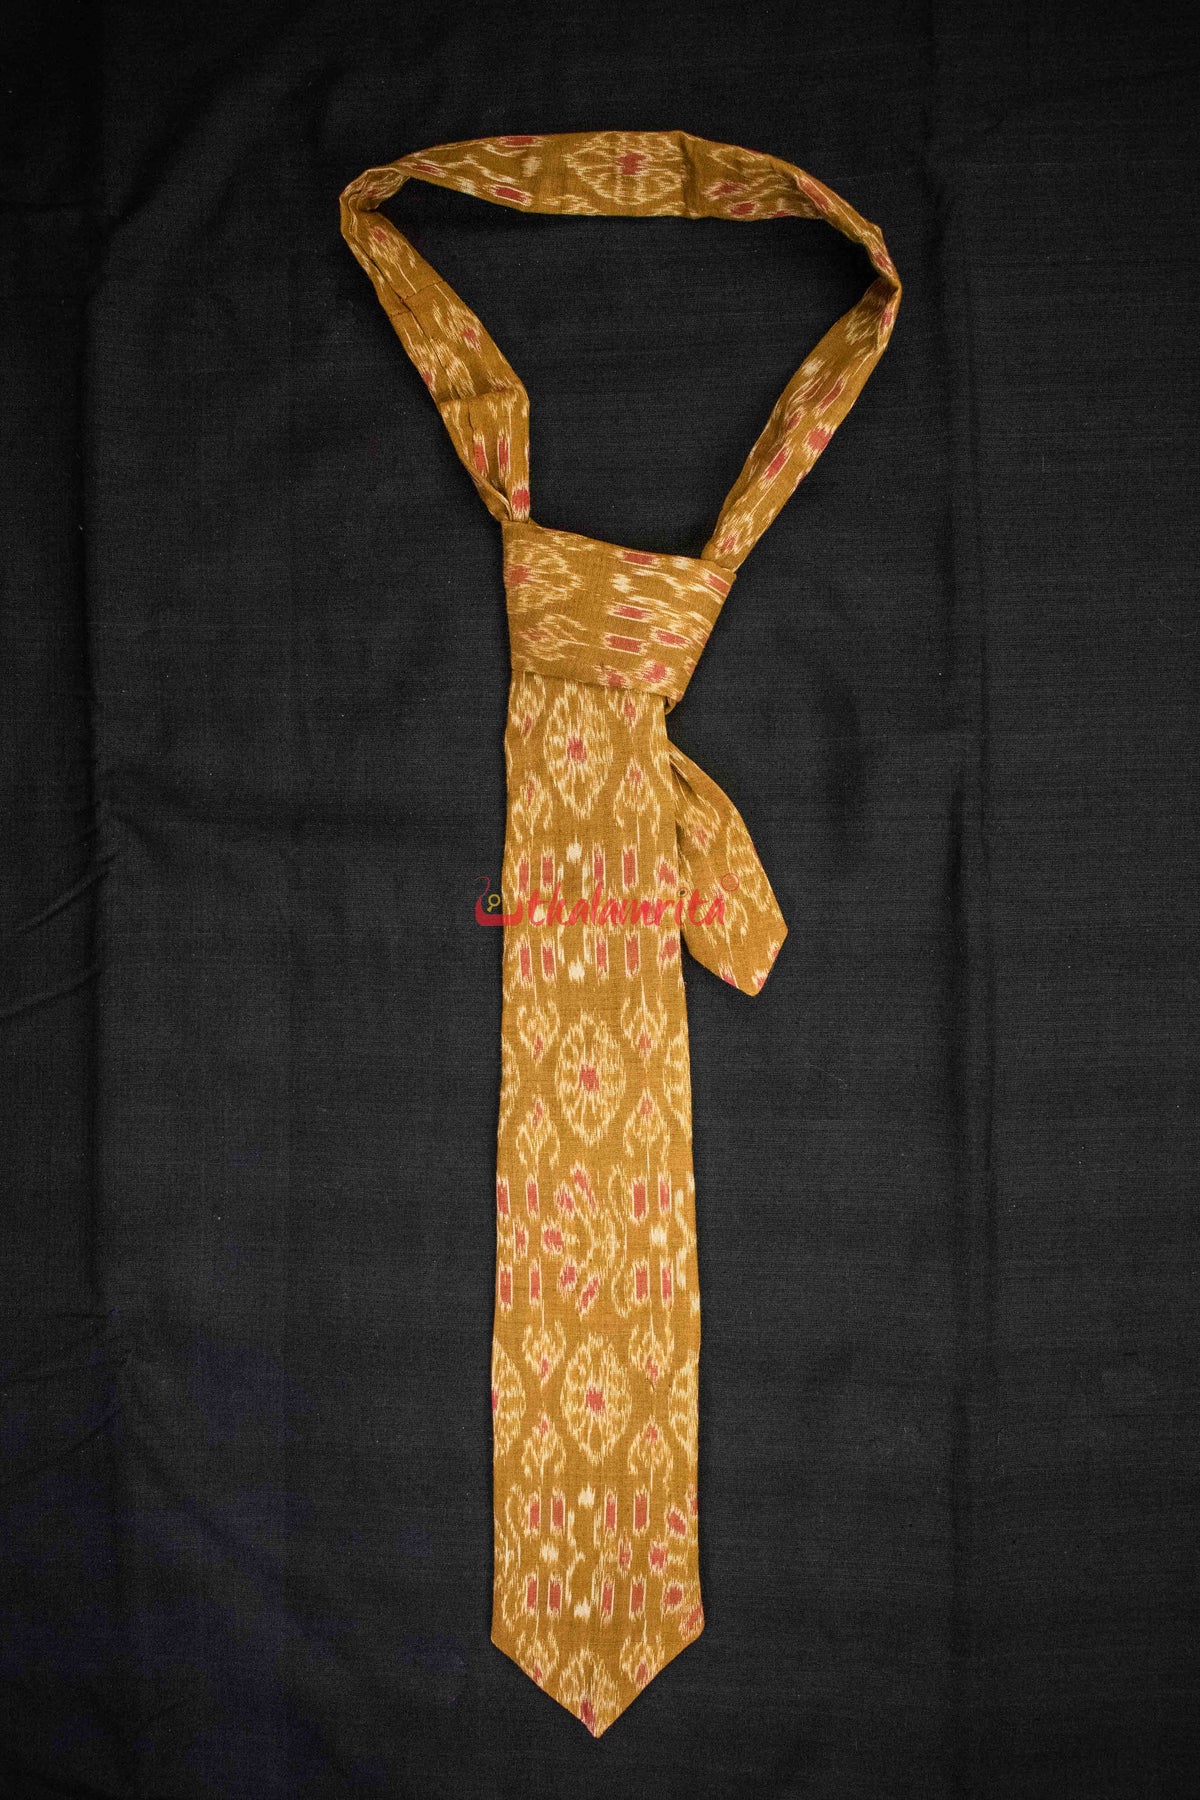 Mustard Flower (Tie)